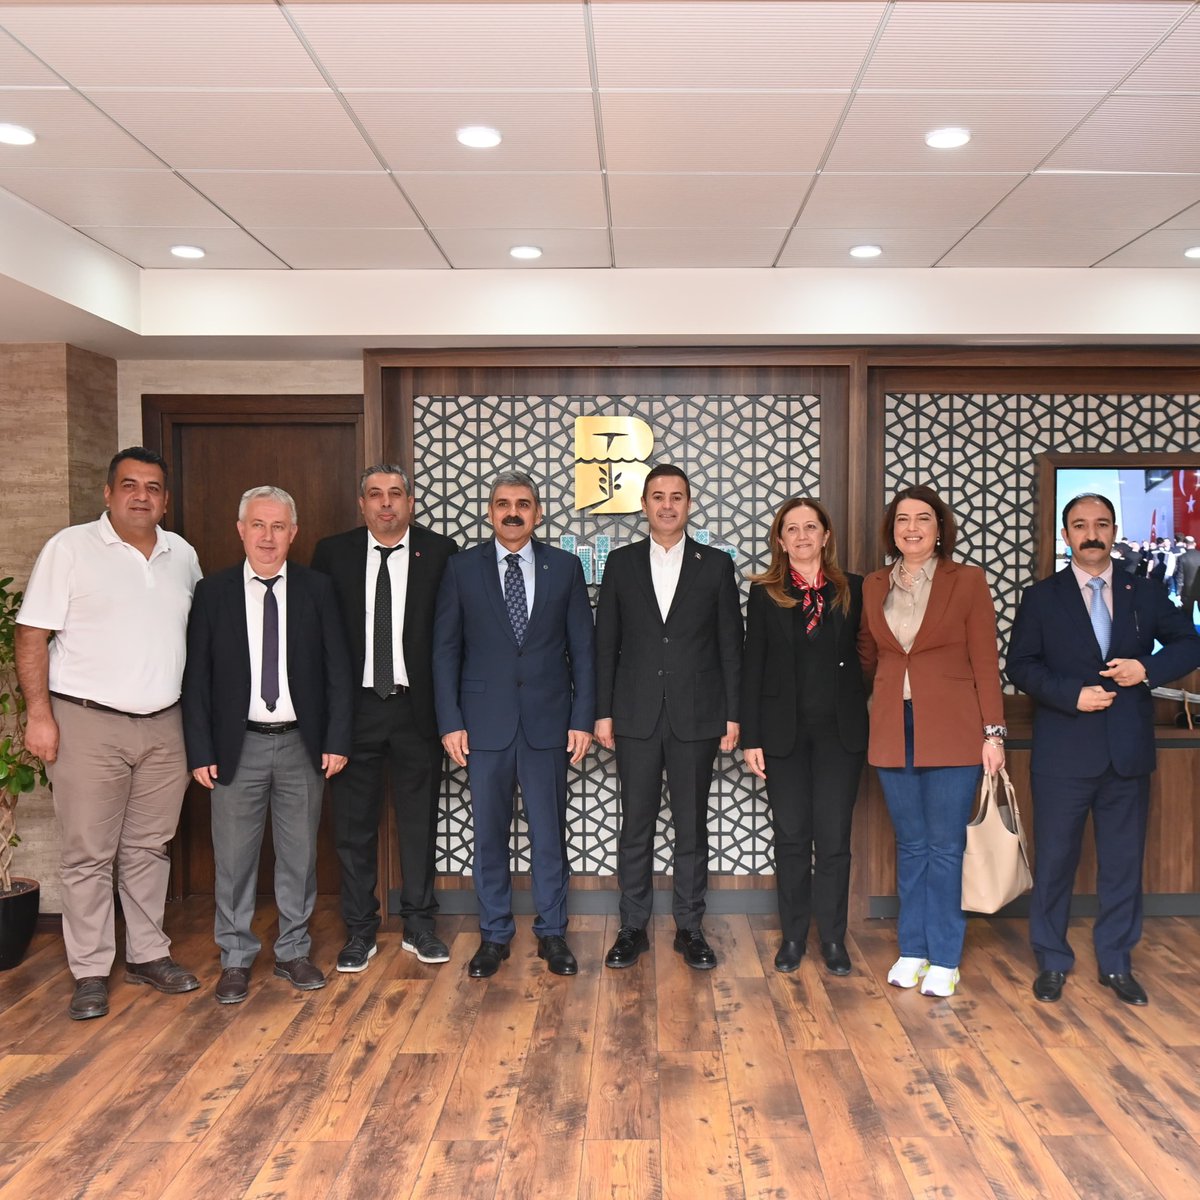 DİSK Genel Başkanı Arzu Çerkezoğlu, DİSK Genel Başkan Yardımcısı ve DİSK Genel-İş Sendikası Genel Başkanı Remzi Çalışkan ve yönetim kurulu üyelerine ziyaretleri için teşekkür ediyorum.